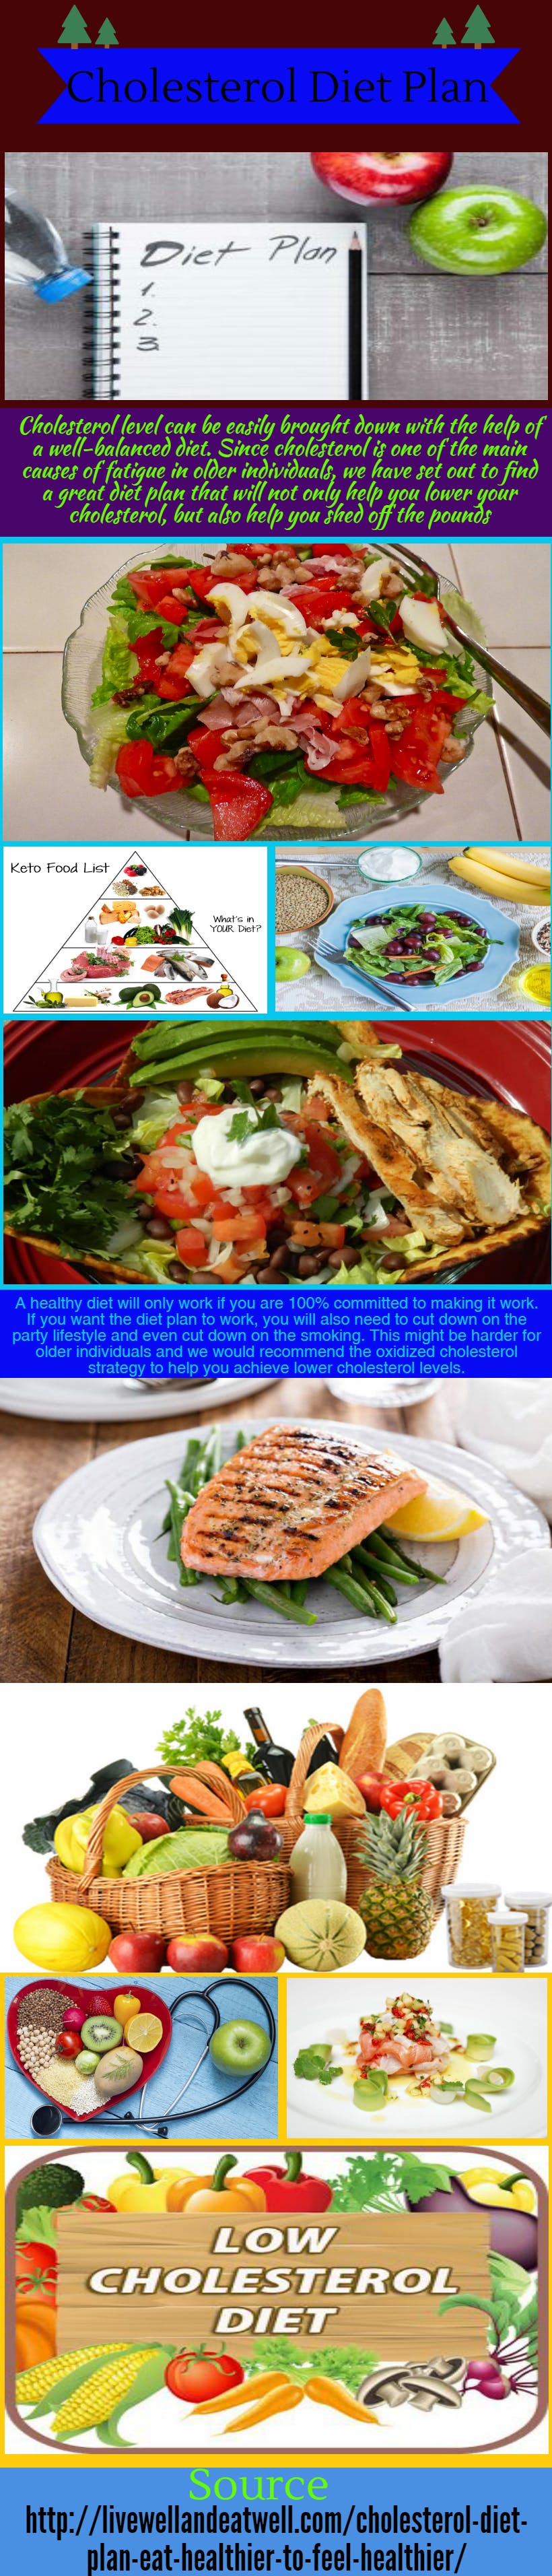 有关低胆固醇饮食计划 胆固醇比率 胆固醇饮食的免费素材图片